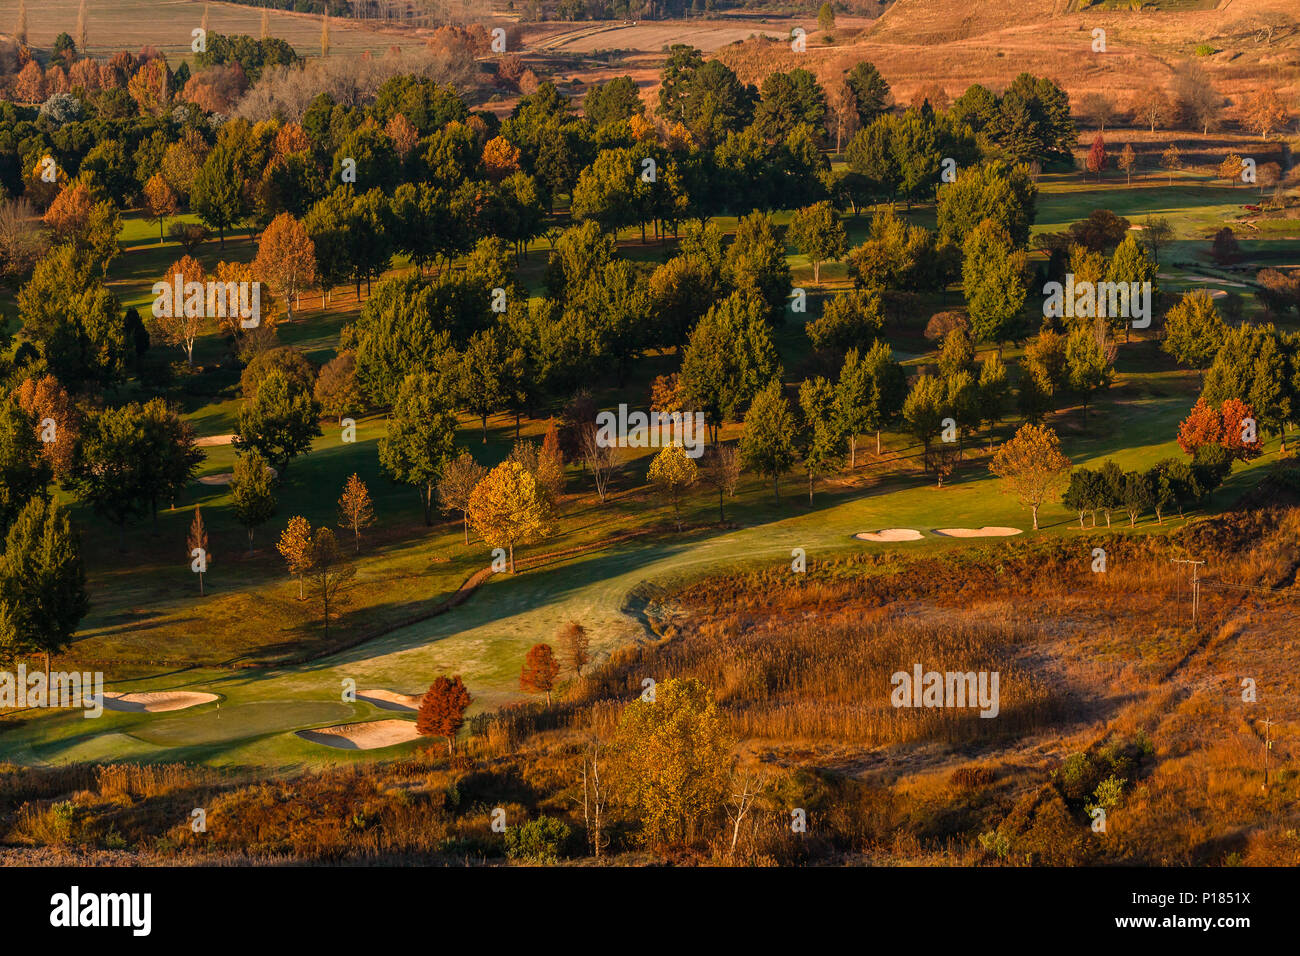 La mattina presto autunno autunno colori affacciato sul campo da golf di bandiera verde stick fairways alberi paesaggio panoramico Foto Stock